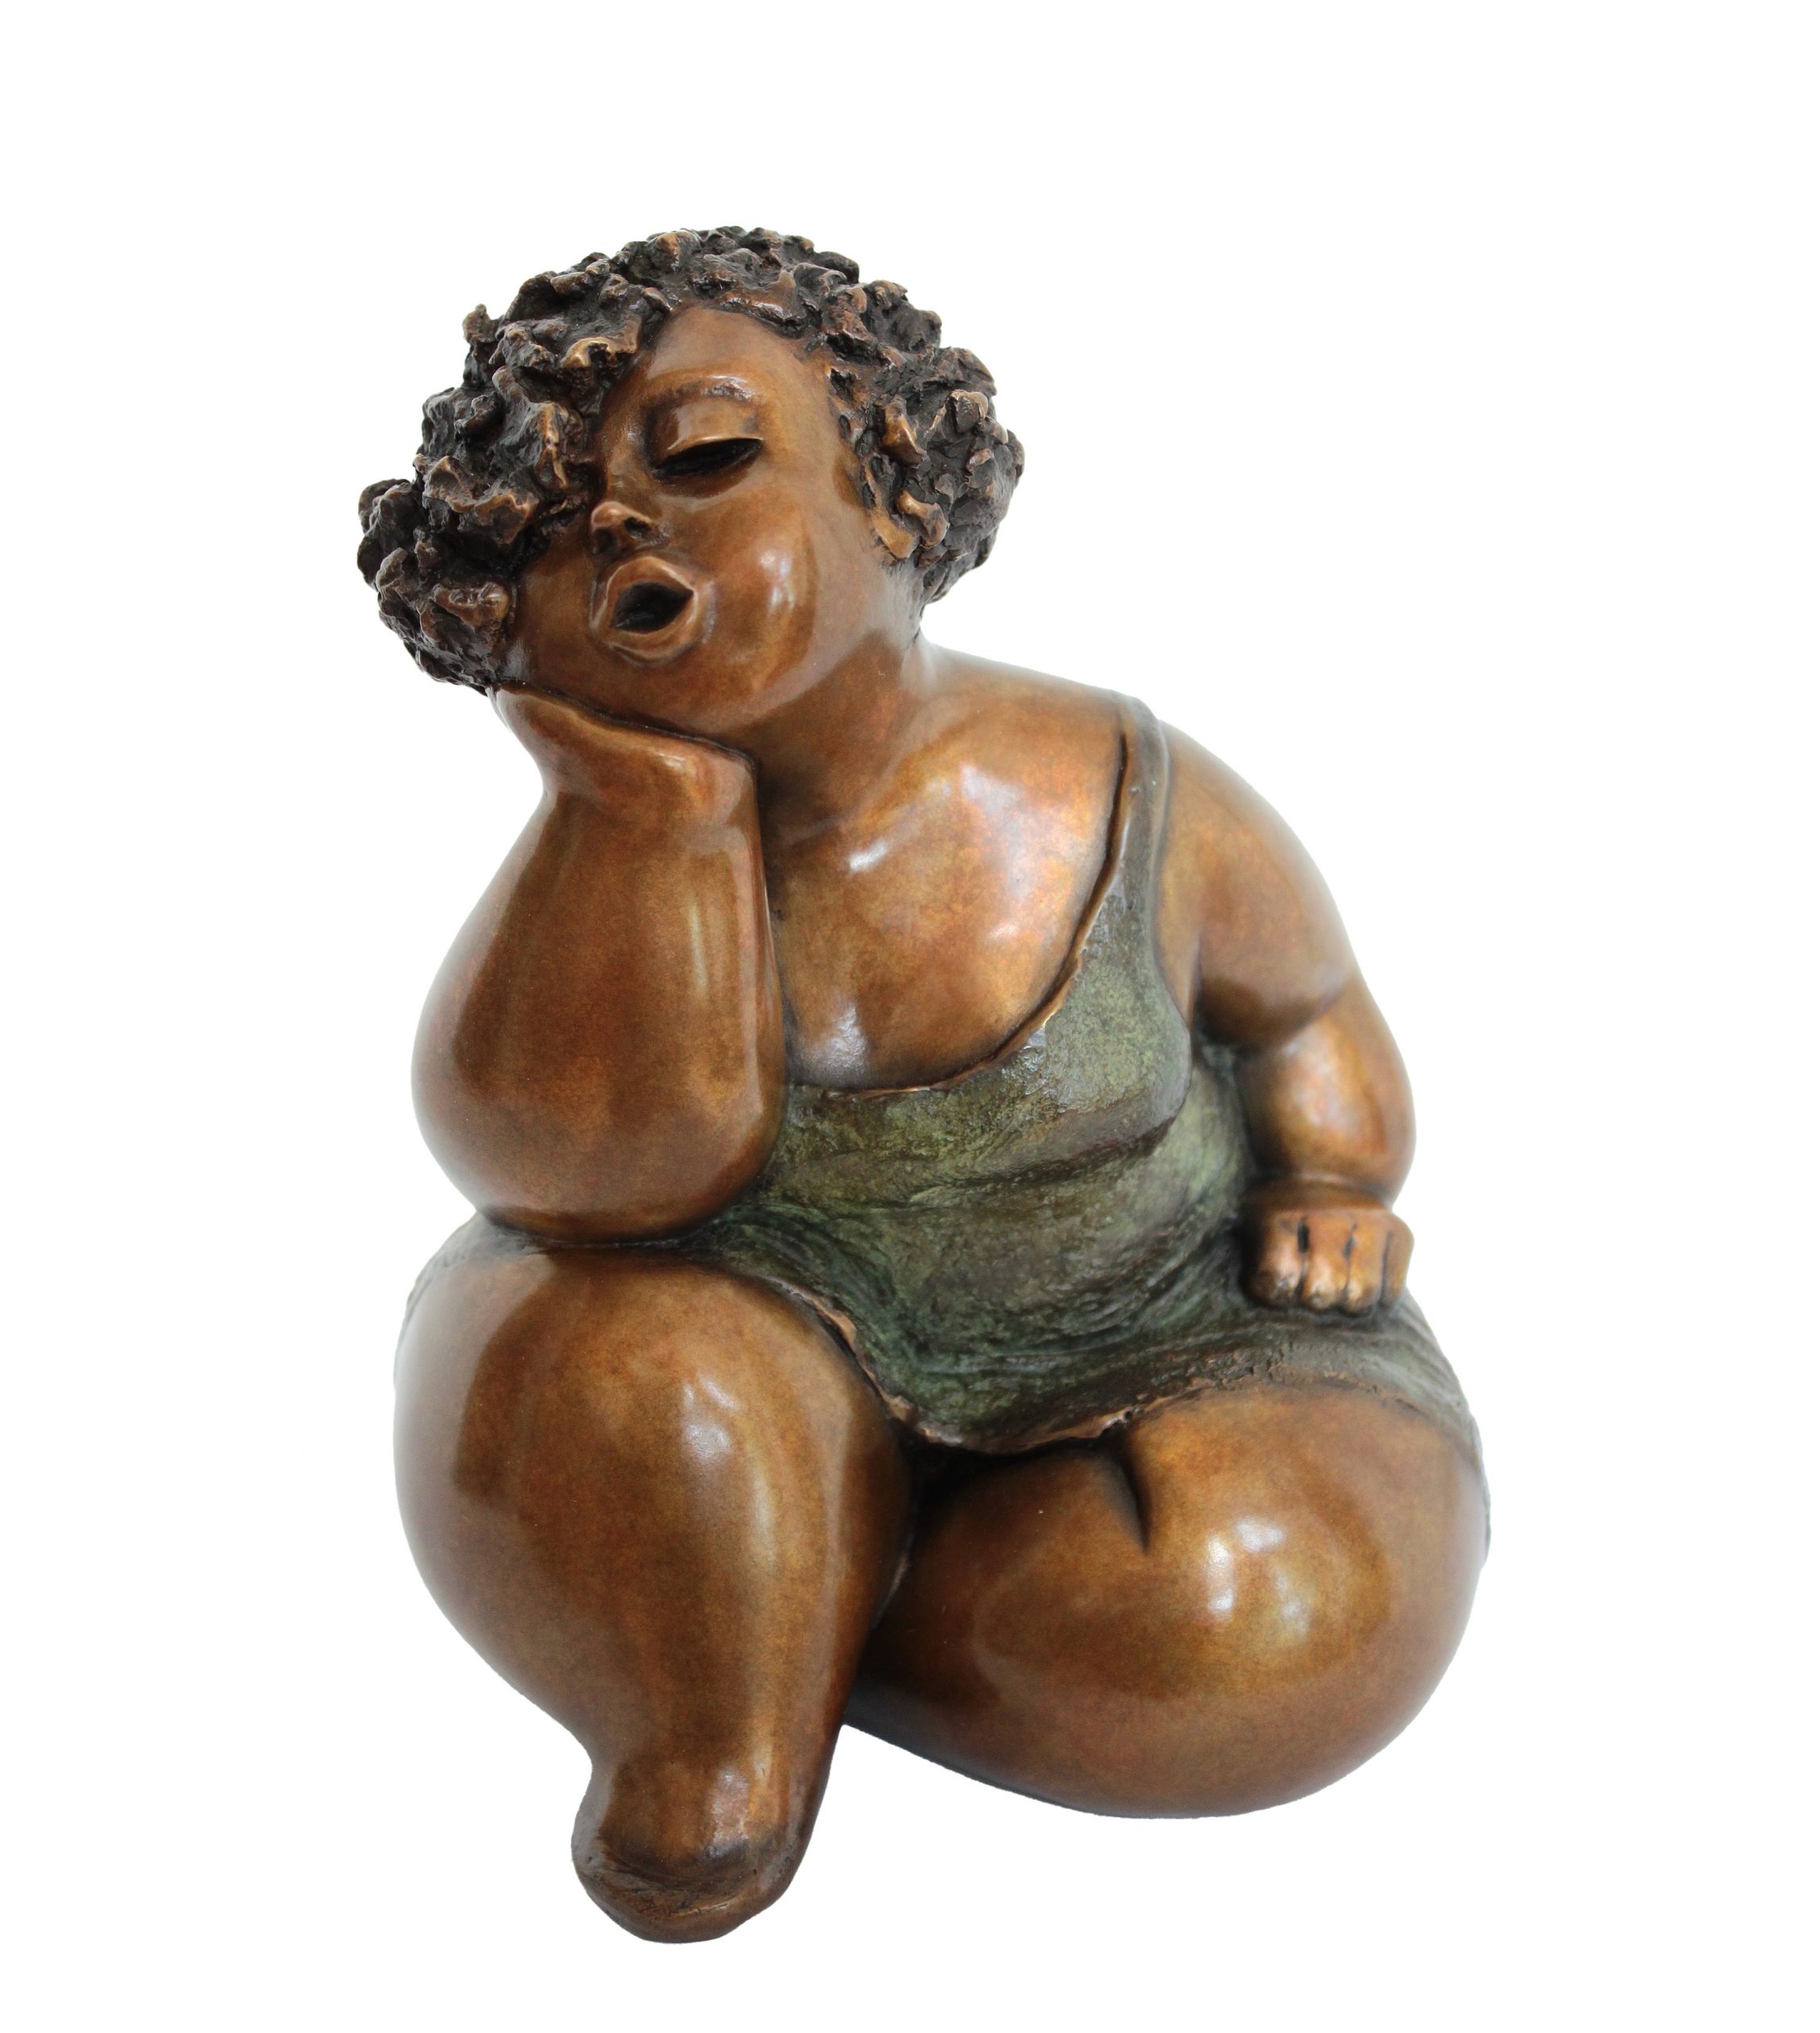 Sculpture de bronze par Rose-Aimée Bélanger à vendre en galerie d'art à Montréal. « Délice » disponible à la Galerie Blanche.